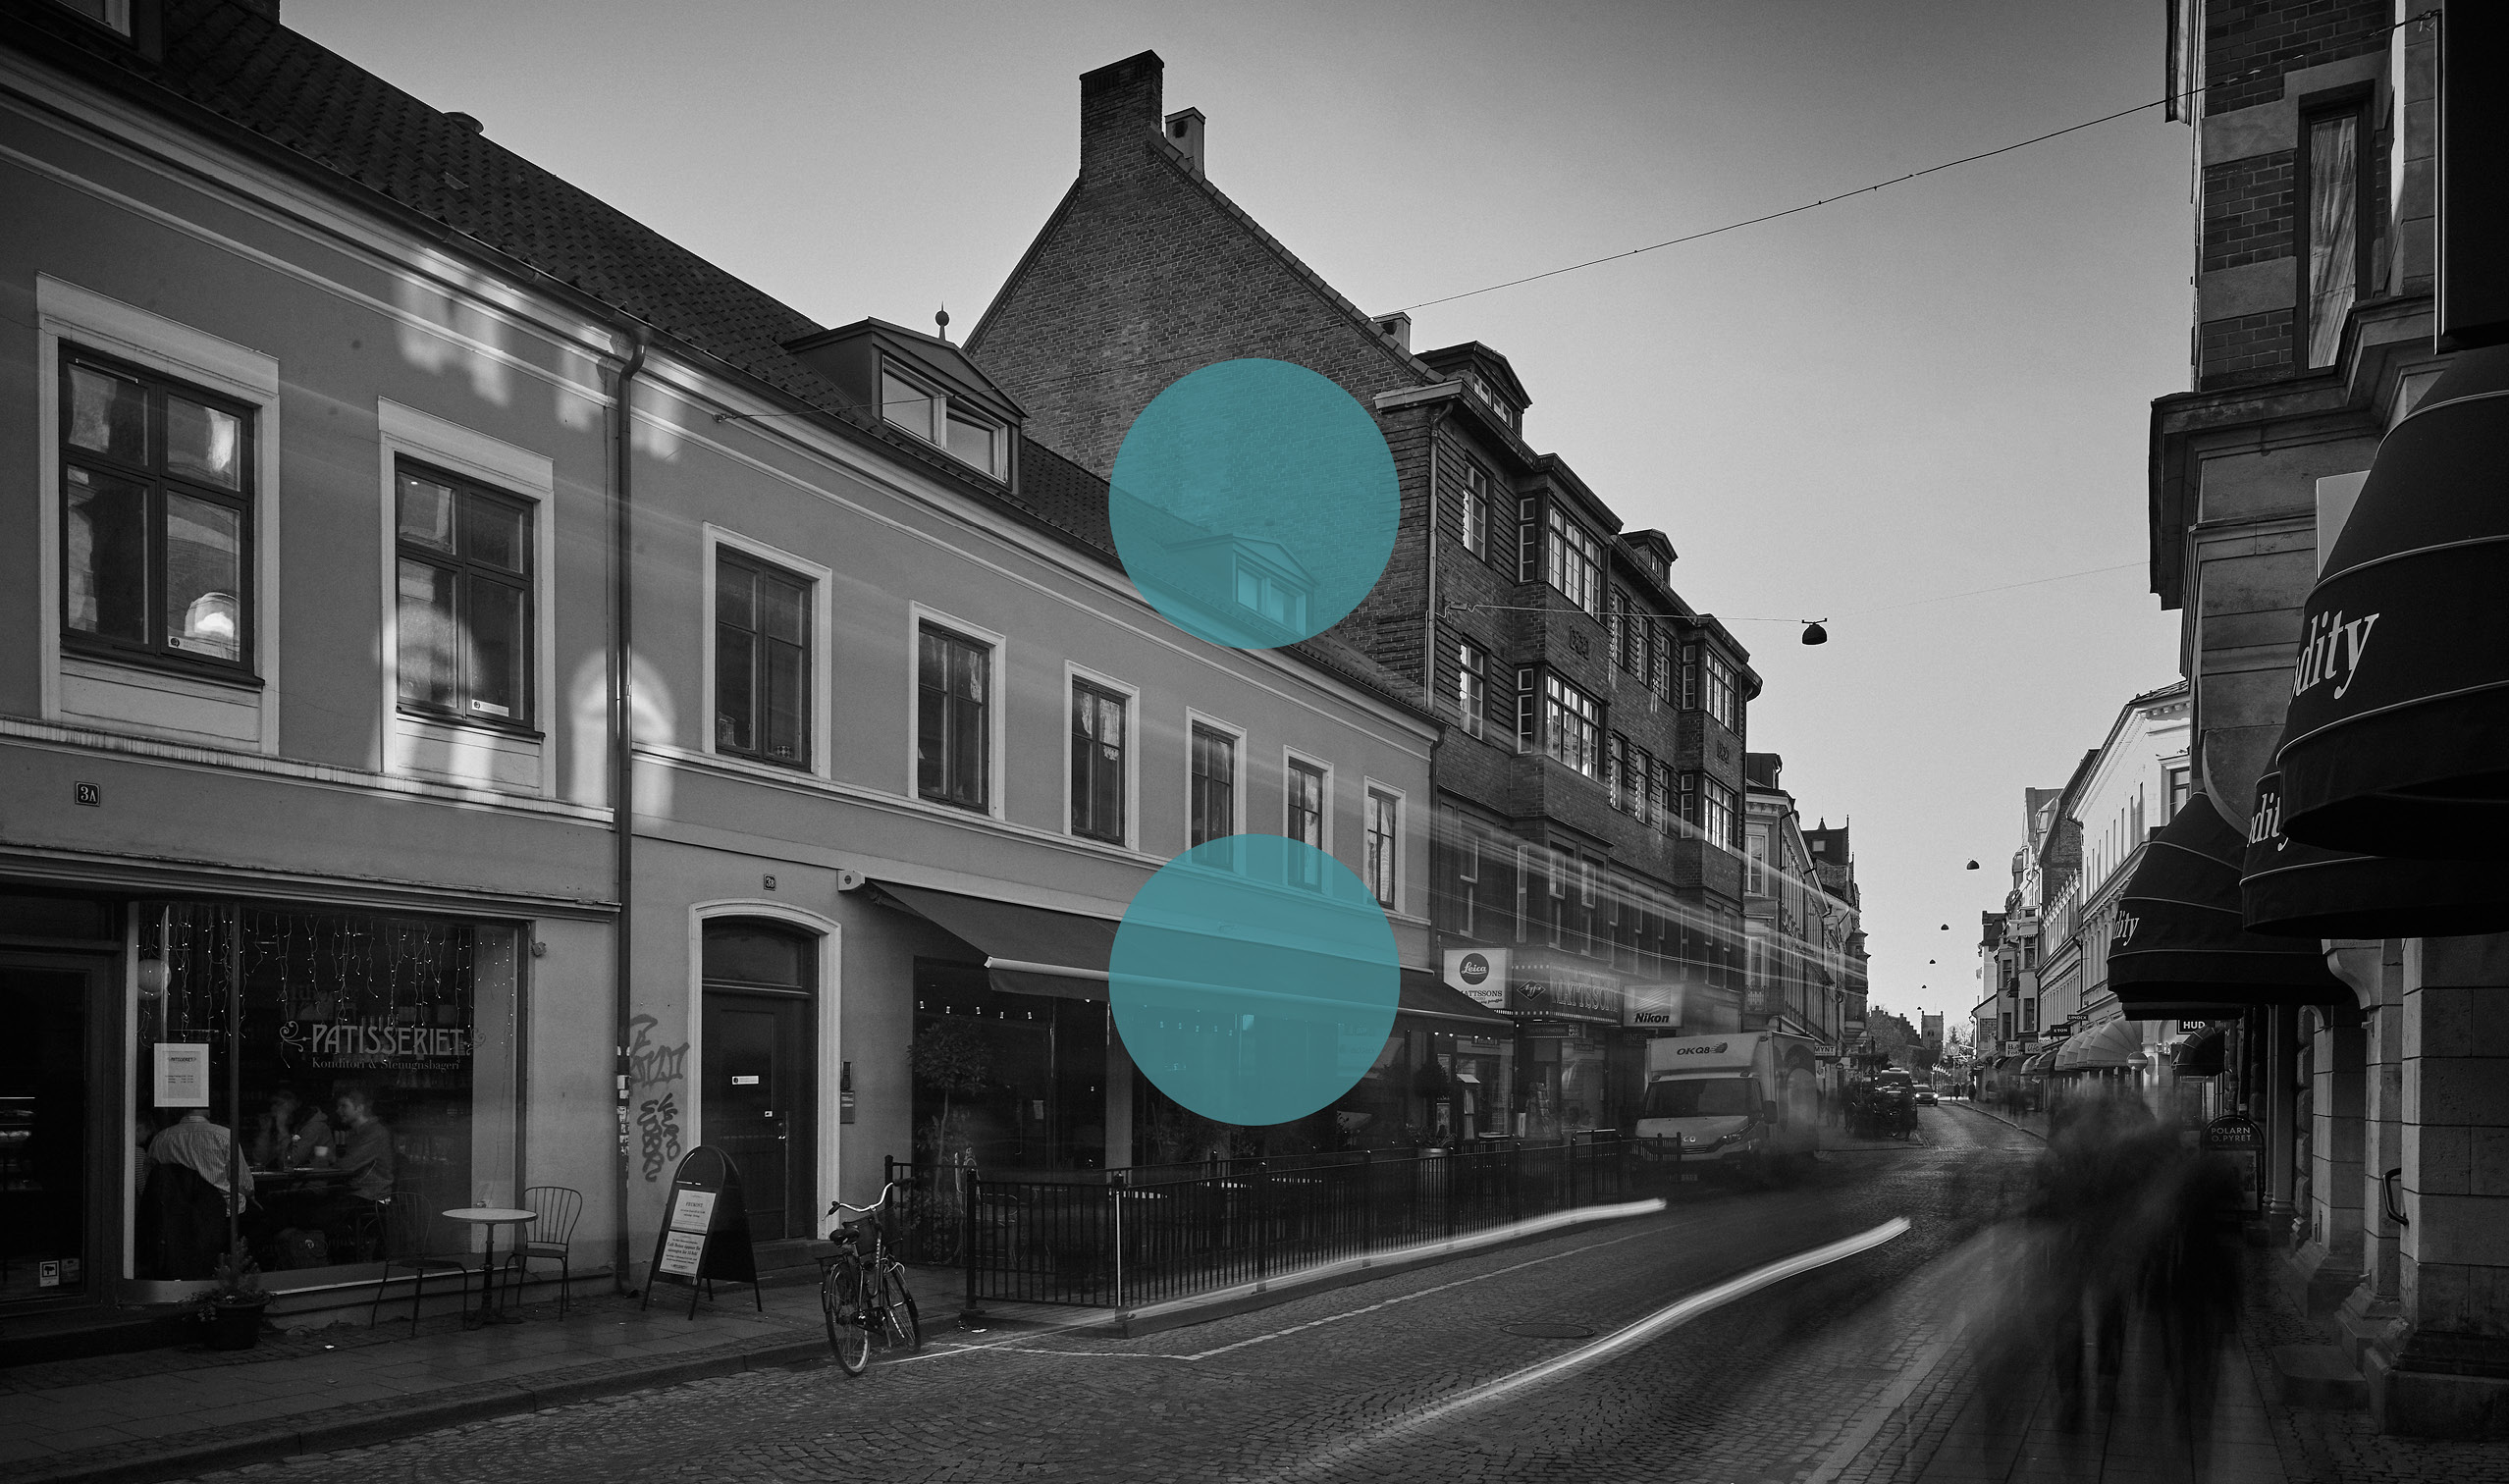 Svartvit bild med två blå prickar för vici advokatbyrå på en gata med rörelse